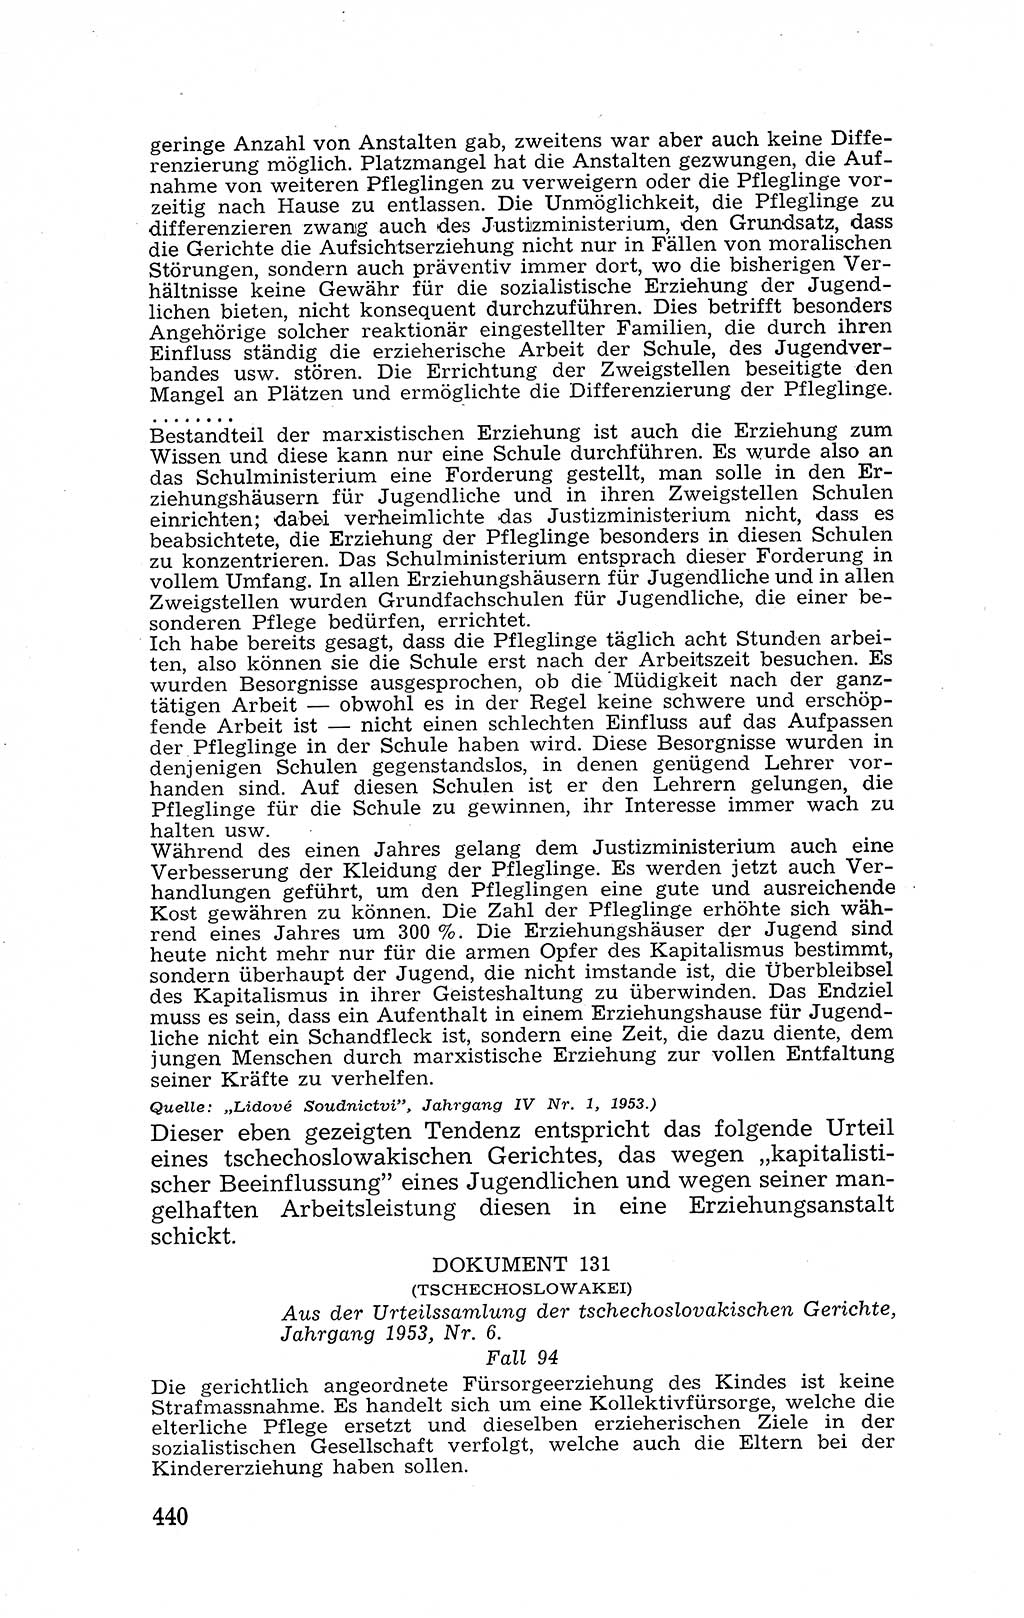 Recht in Fesseln, Dokumente, Internationale Juristen-Kommission [Bundesrepublik Deutschland (BRD)] 1955, Seite 440 (R. Dok. IJK BRD 1955, S. 440)